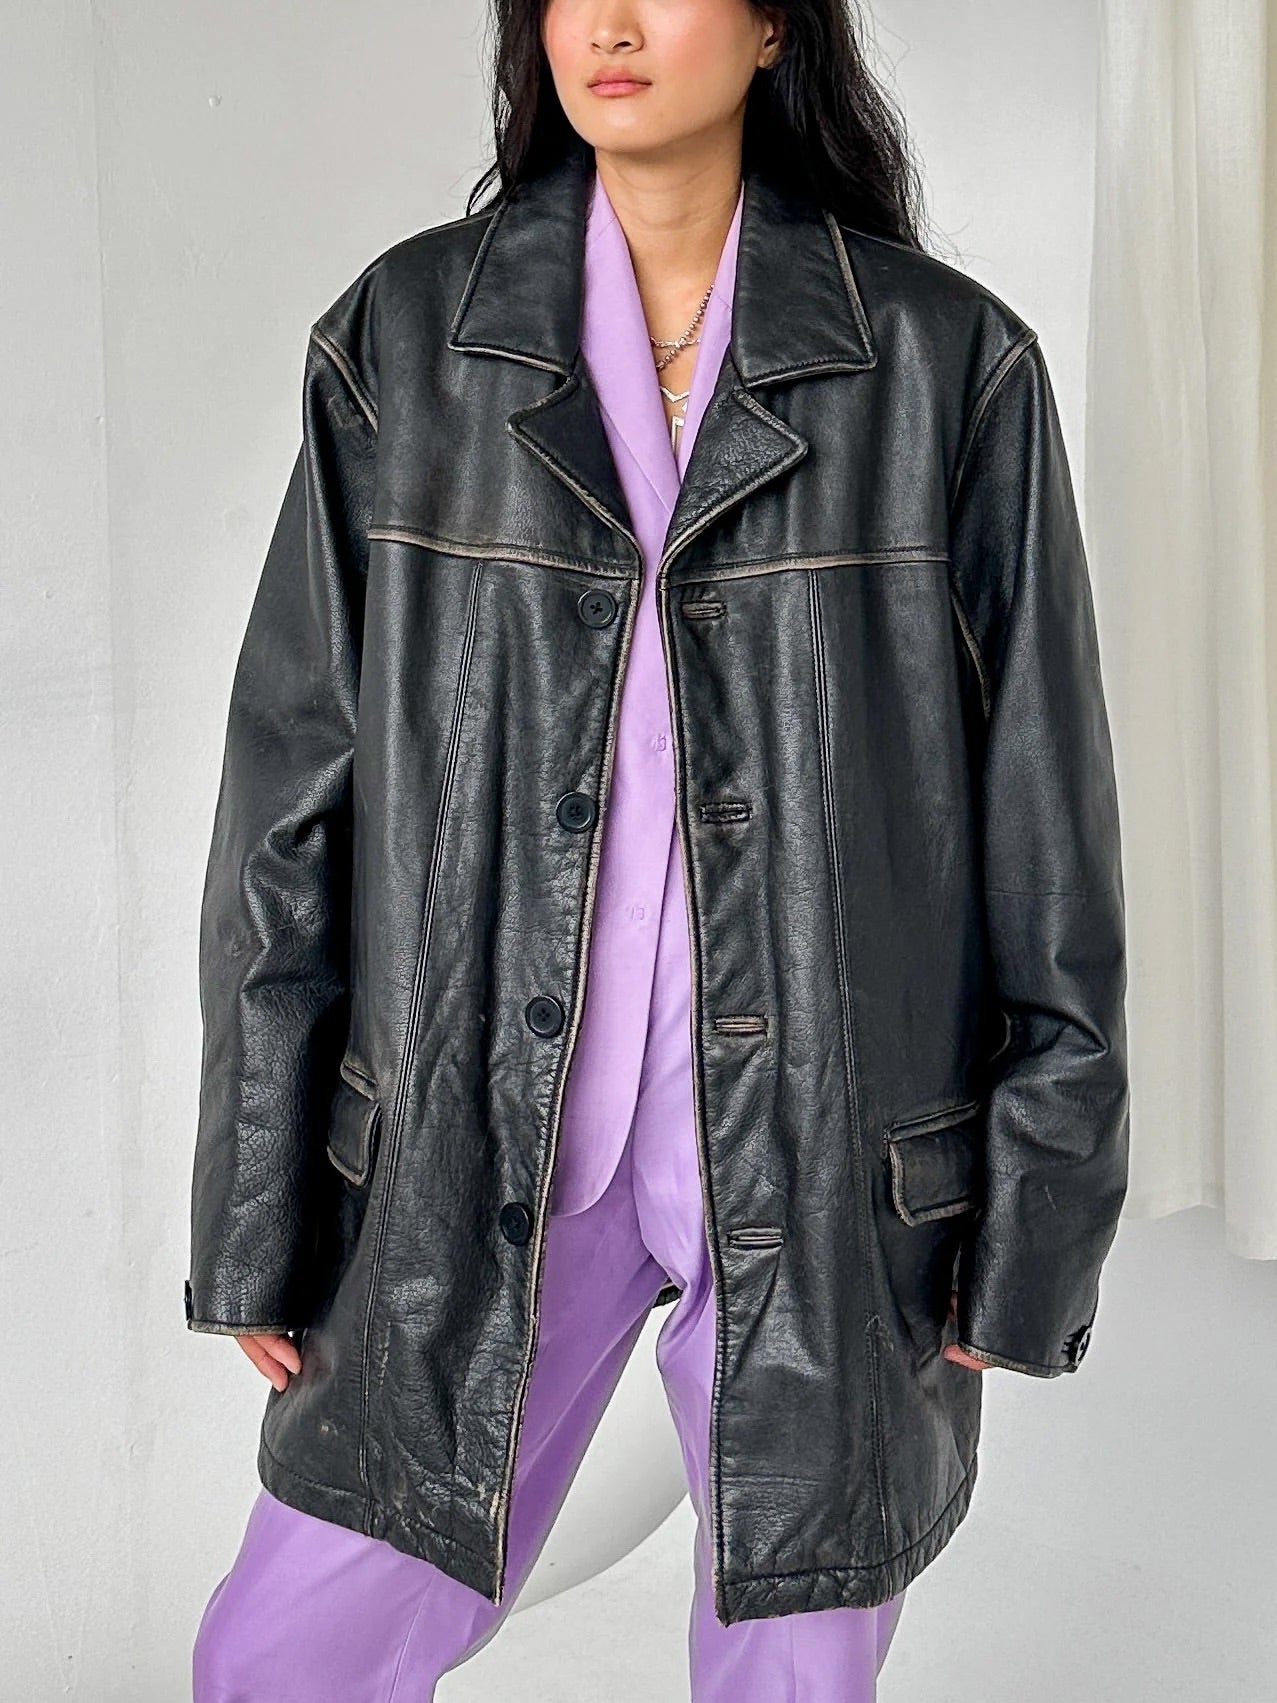 Distressed Leather Jacket (XL-XXL) - 5